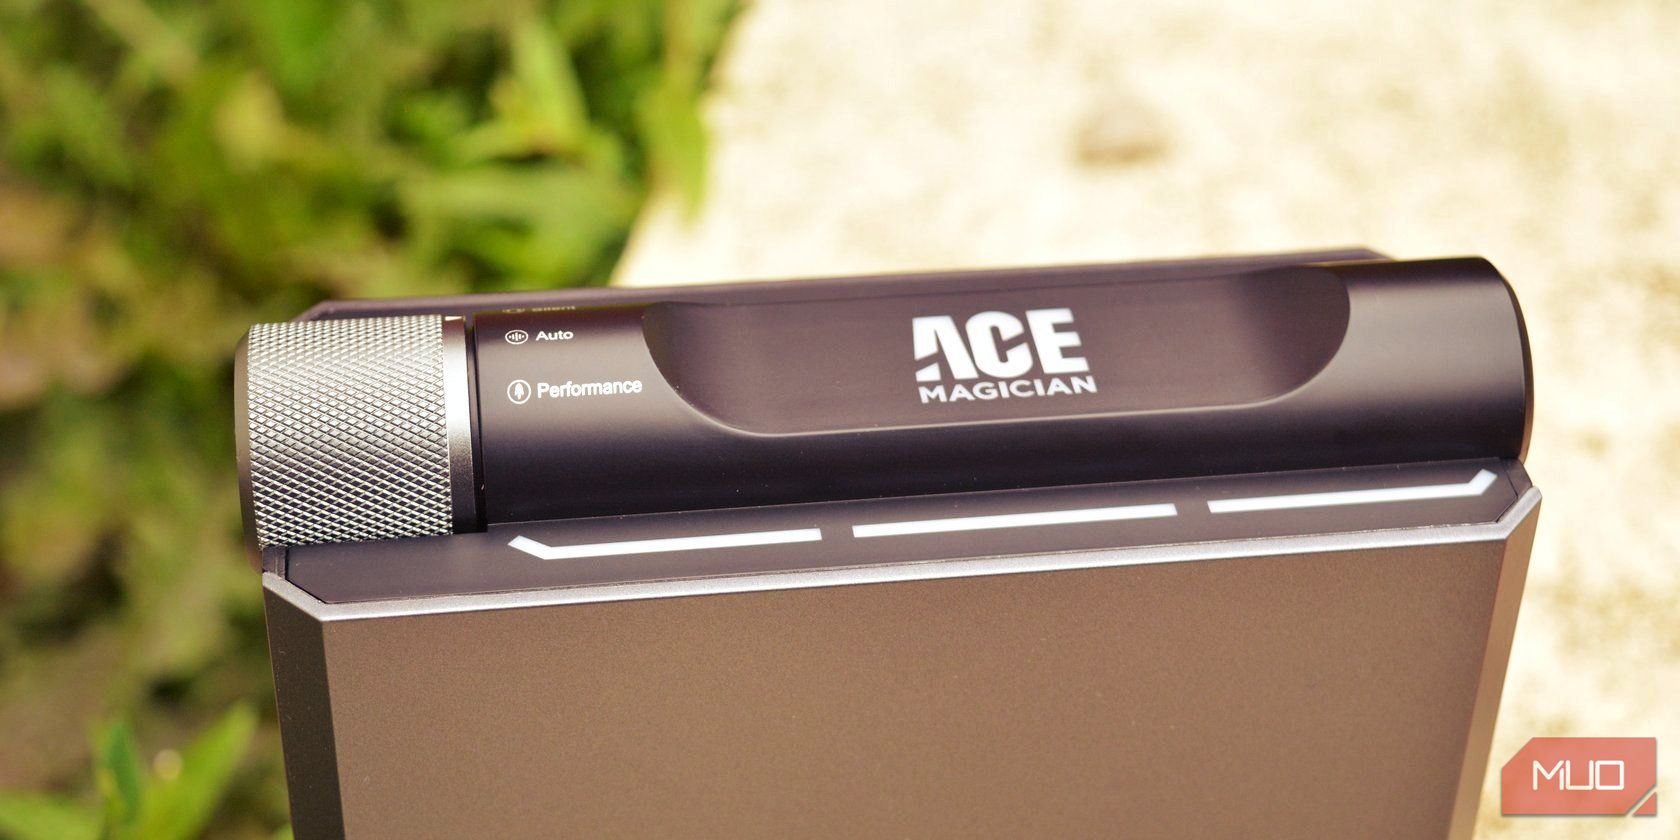 Ace Magician AM08 Pro Mini PC review